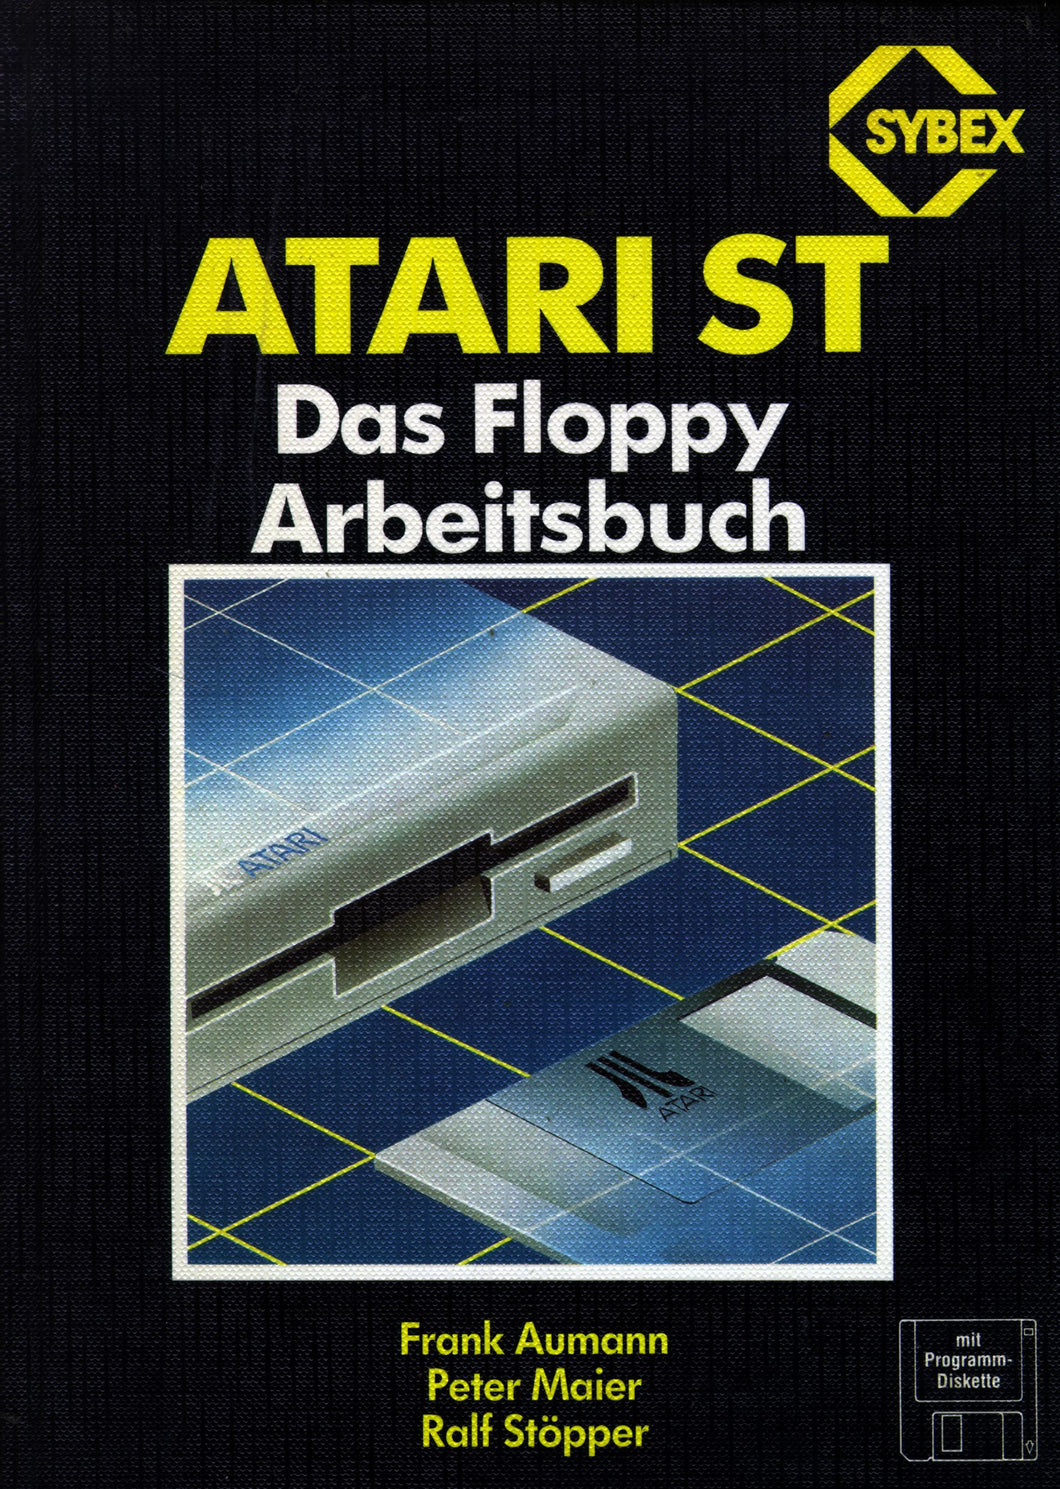 ATARI ST Das Floppy Arbeitsbuch Vorderseite